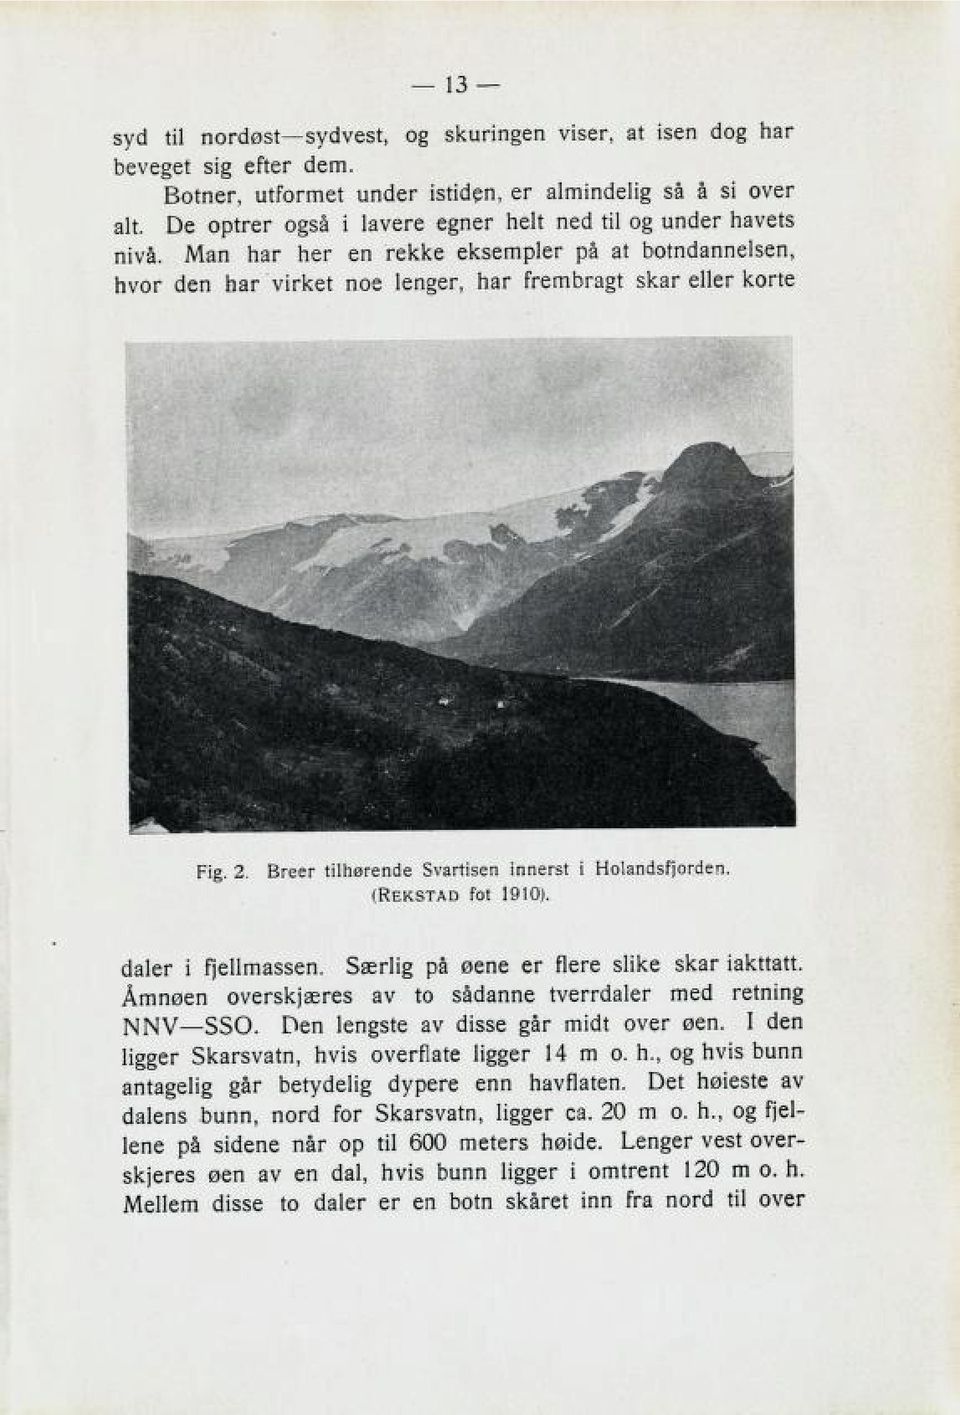 Breer tilhørende Svartisen innerst i Holandsfjorden. (Rekstad fot 1910). 6aler i fjellmaß3en. 3Xrli3 pa sene er Nere Blike Bkar iakttatt, over3kjxre3 av to Baclanne tverrdaler mcci retninz 330.